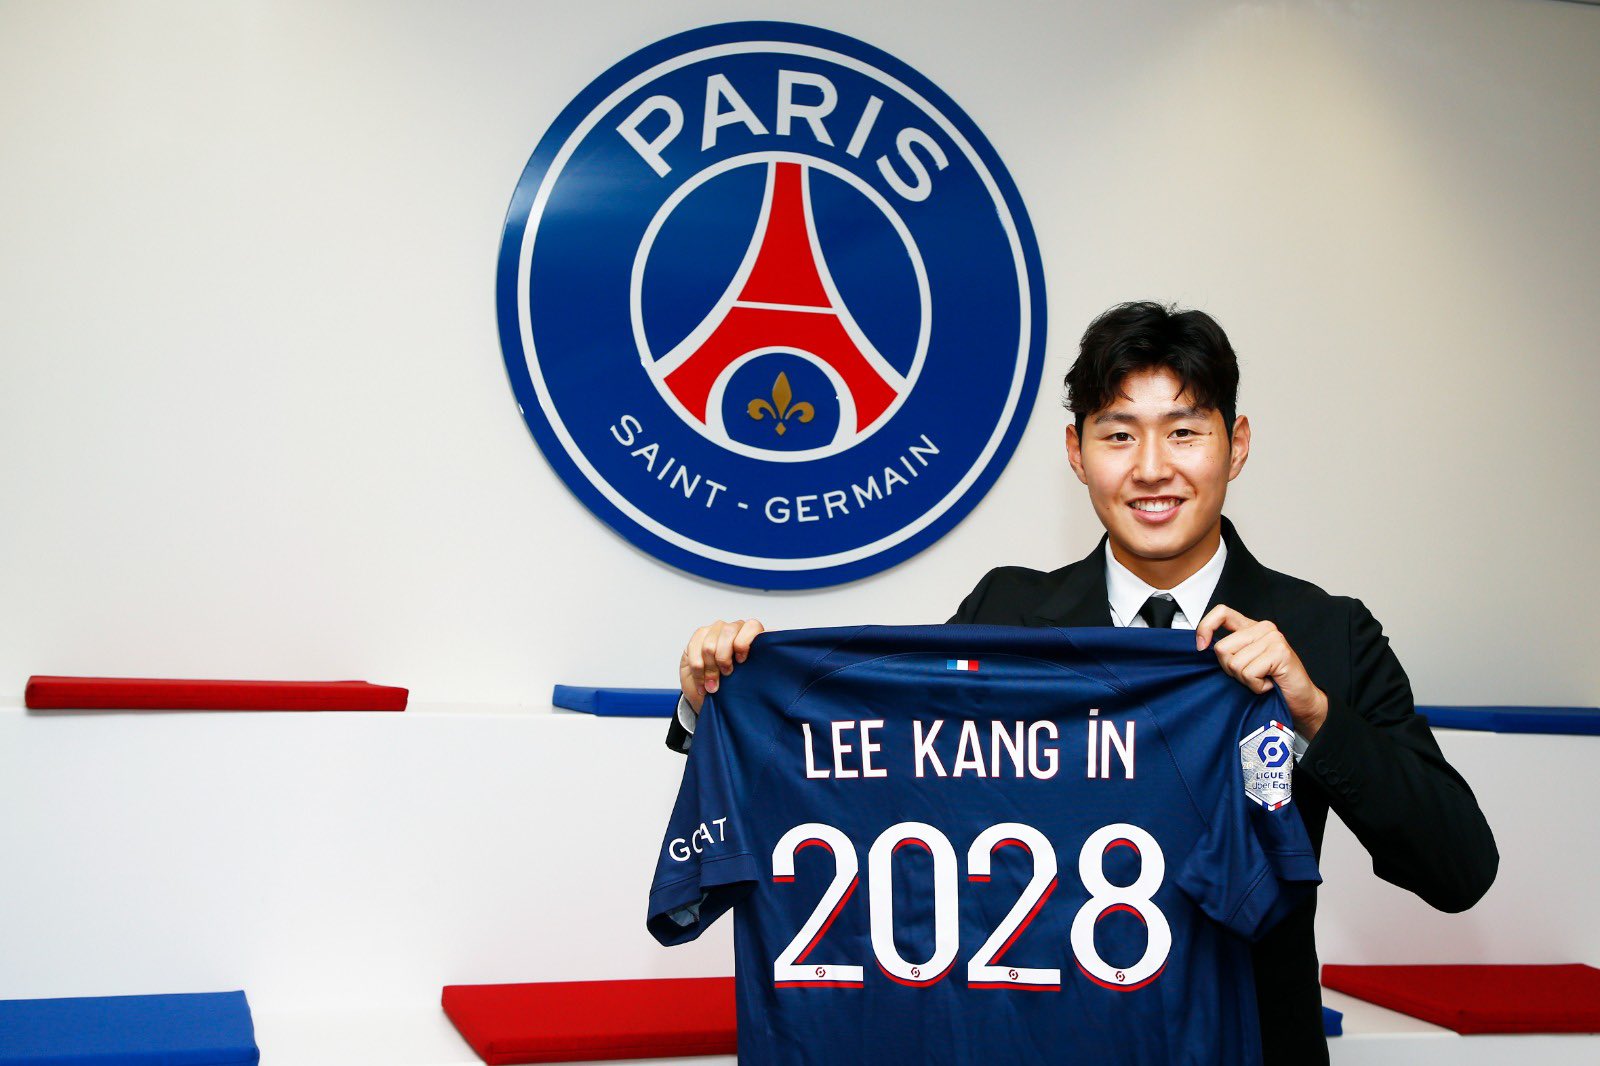 El PSG ficha a Kangin Lee: El ascenso meteórico del talentoso surcoreano”